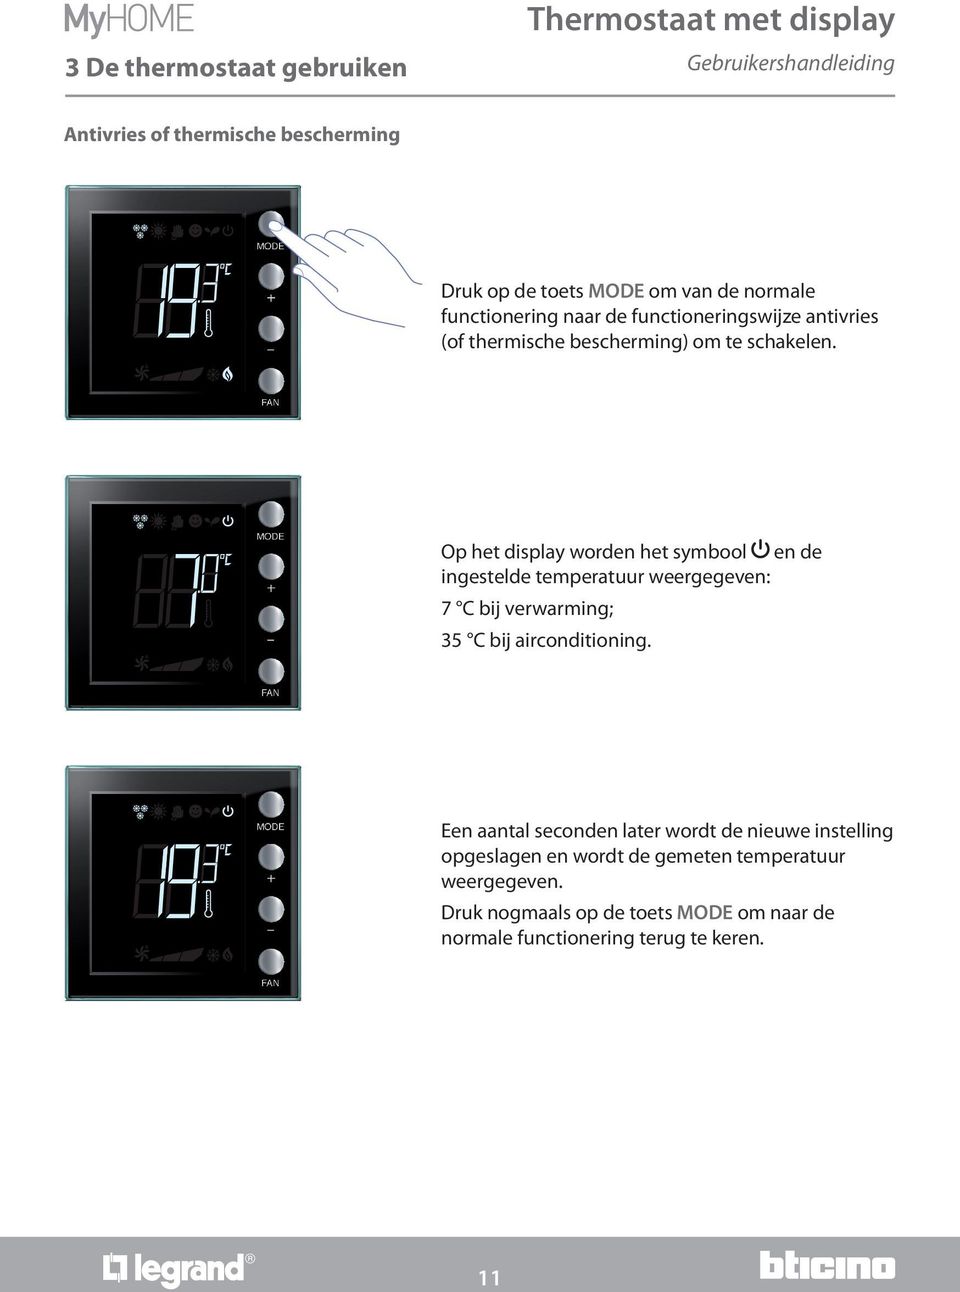 Op het display worden het symbool en de ingestelde temperatuur weergegeven: 7 C bij verwarming; 35 C bij airconditioning.